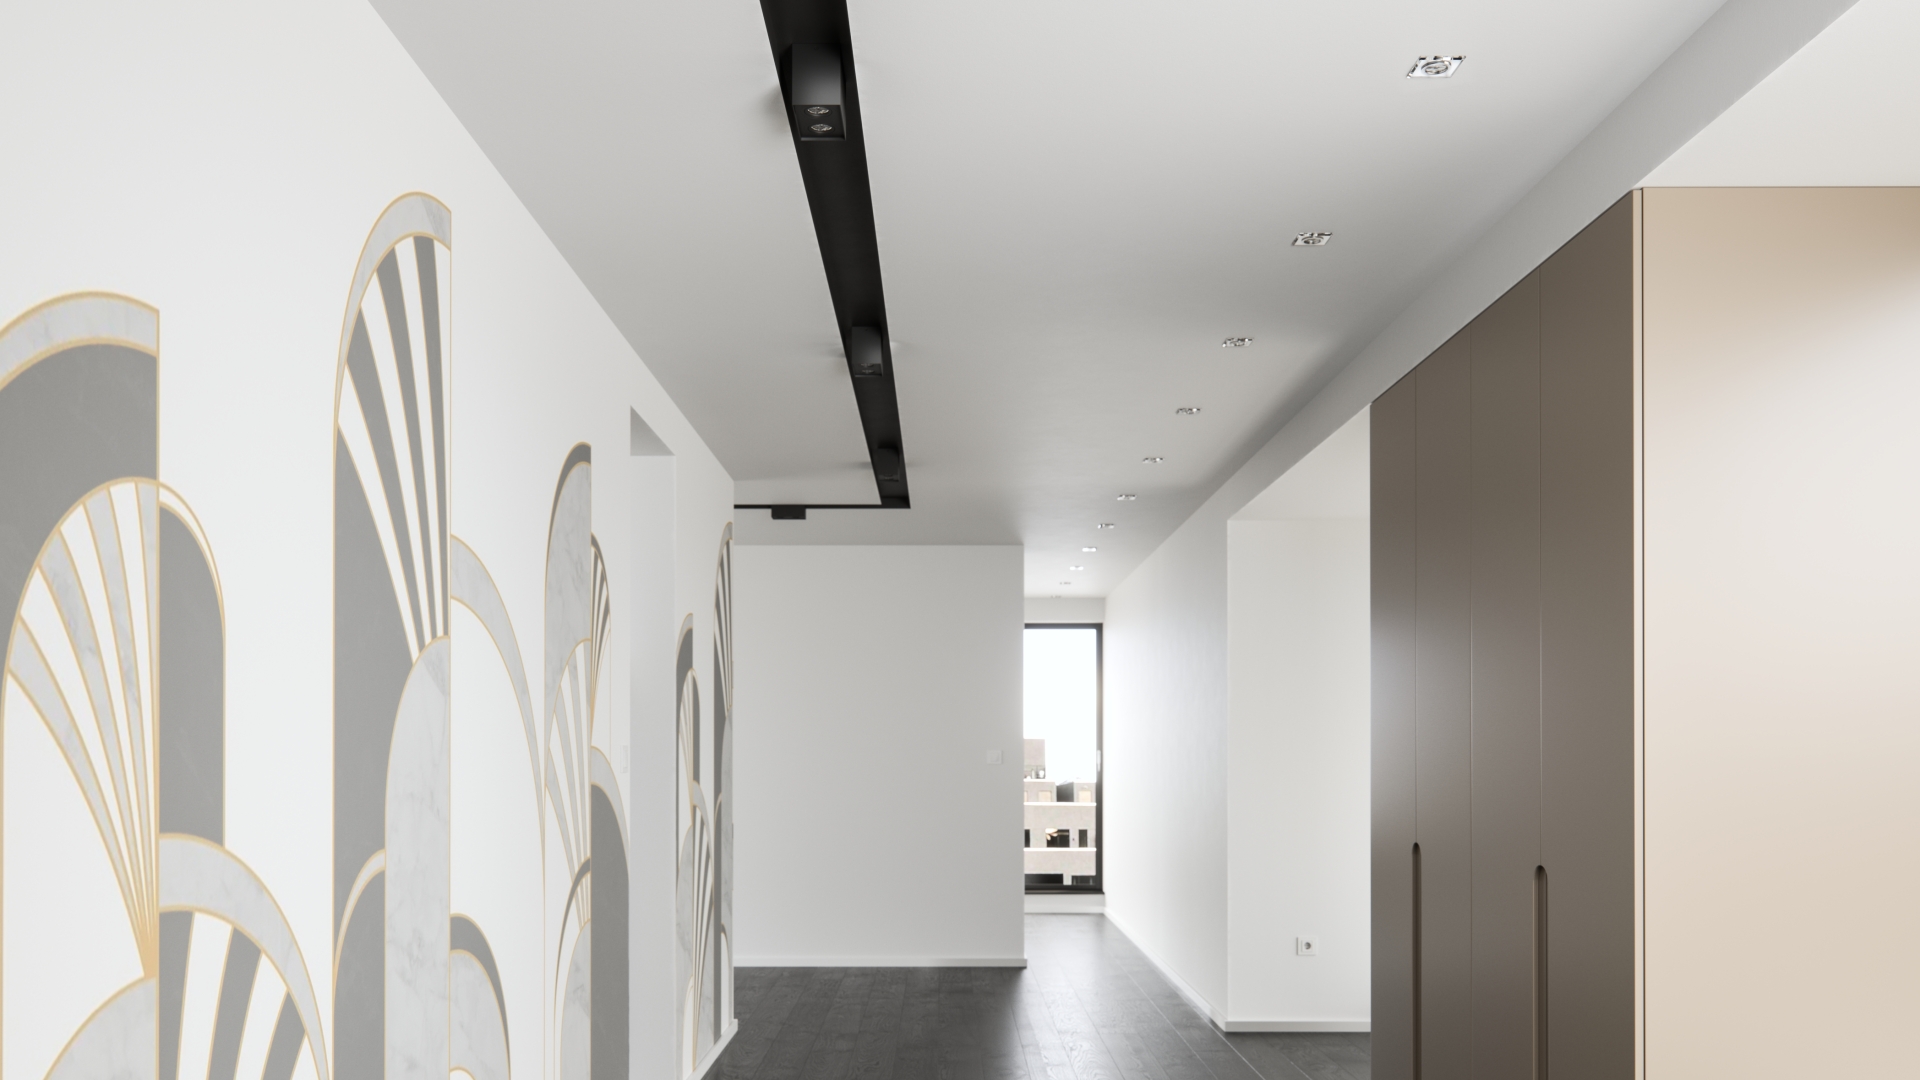 Corridor lighting with ceiling fixtures